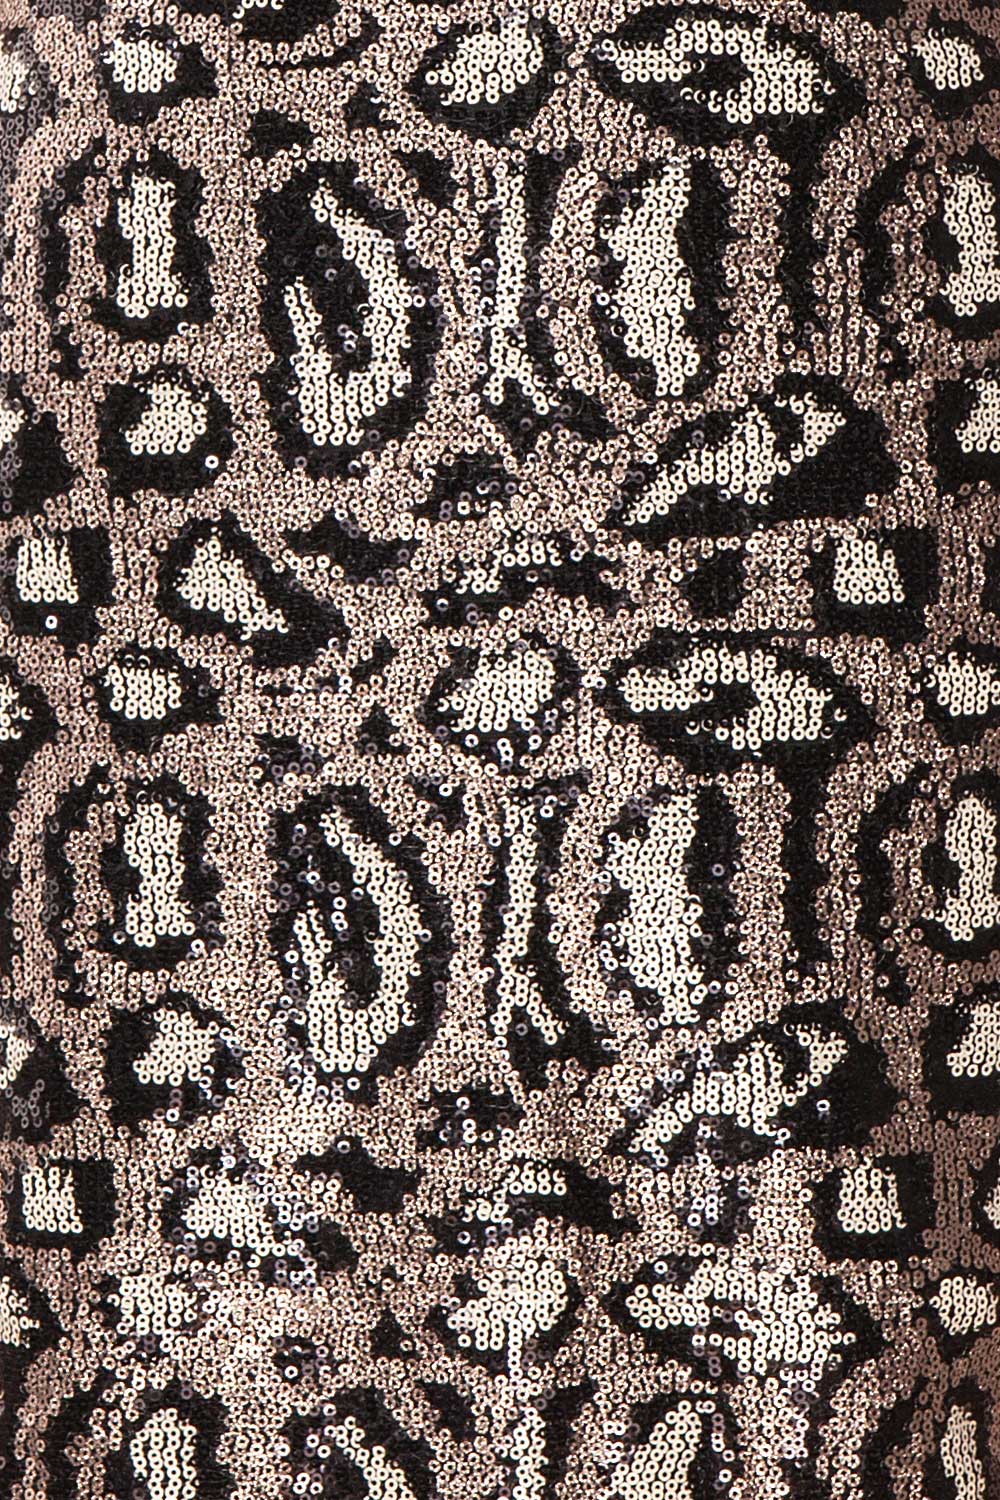 Sharmaine Bronze Leopard Print Sequin Party Dress fabric detail | Boutique 1861